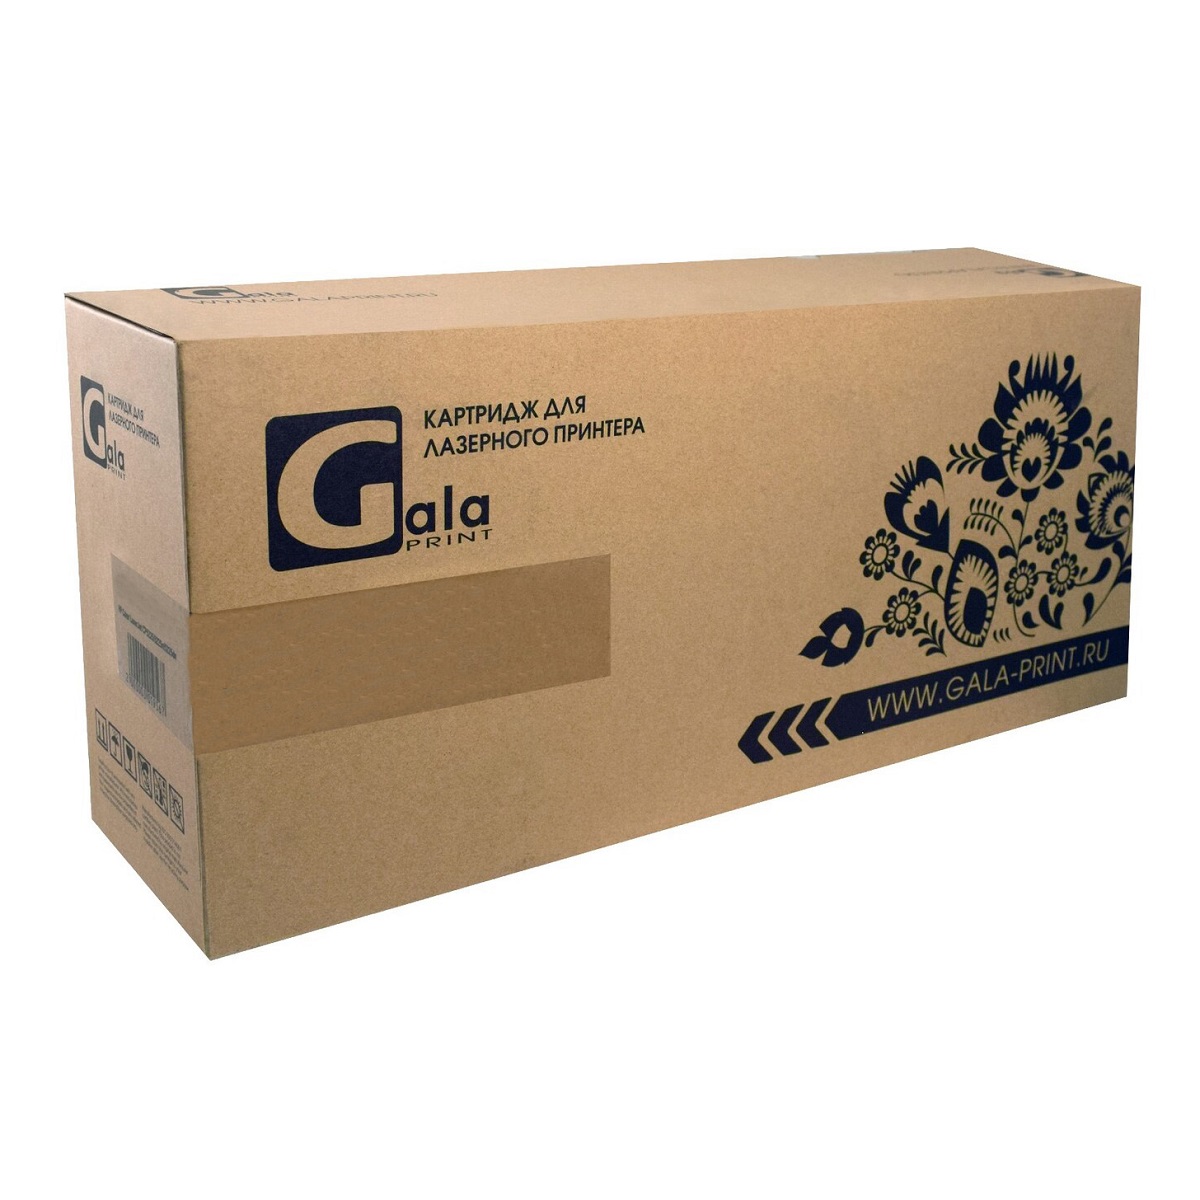 Картридж лазерный GalaPrint GP-006R01701 (006R01701), черный, 26000 страниц, совместимый для Xerox AltaLink C8000ser/ C8030/ C8035/ C8045/ C8055/ C8070